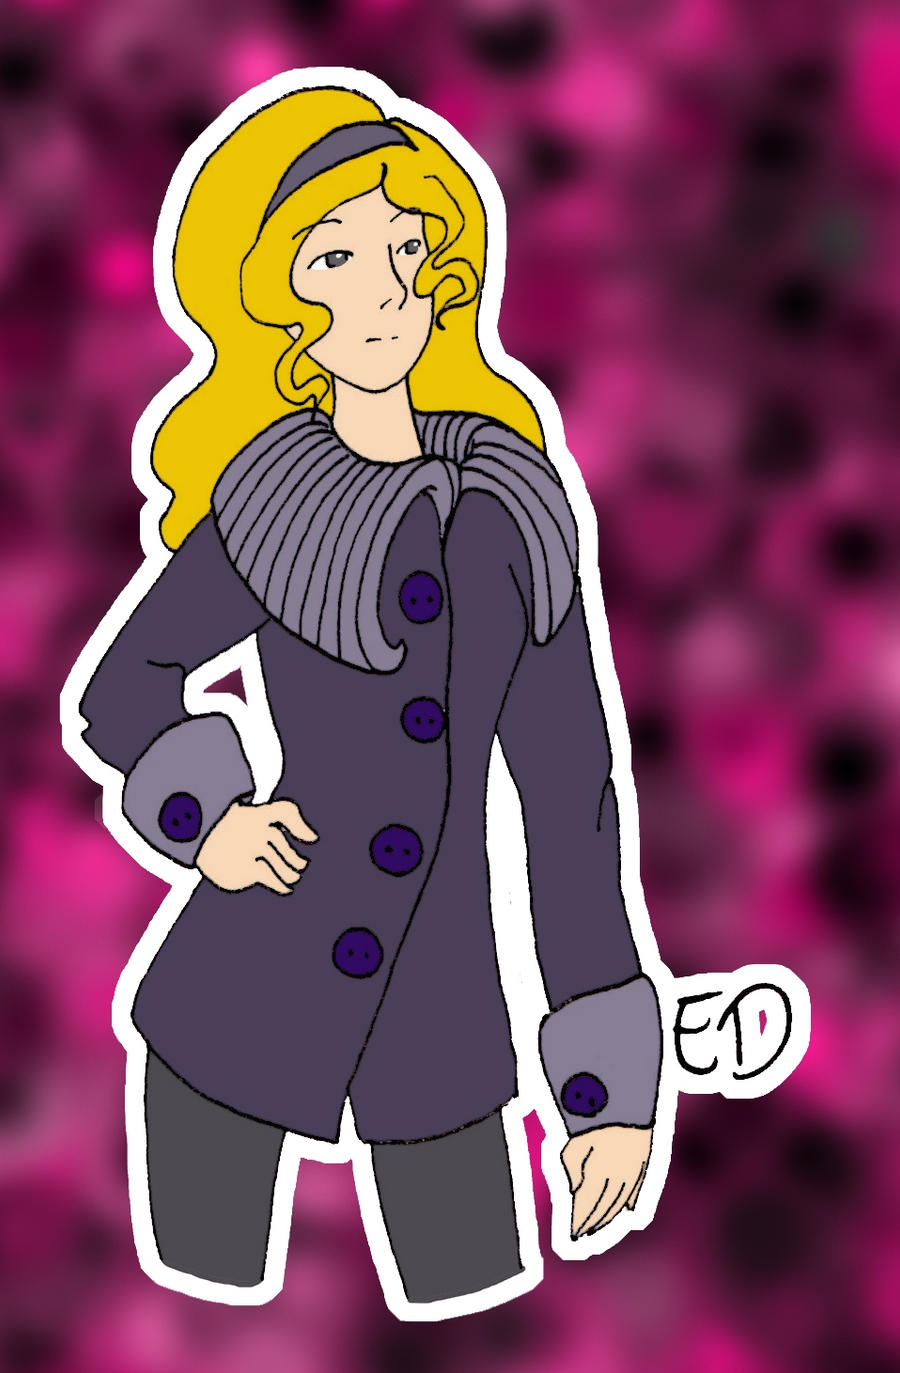 EGG - Ed in purple coat